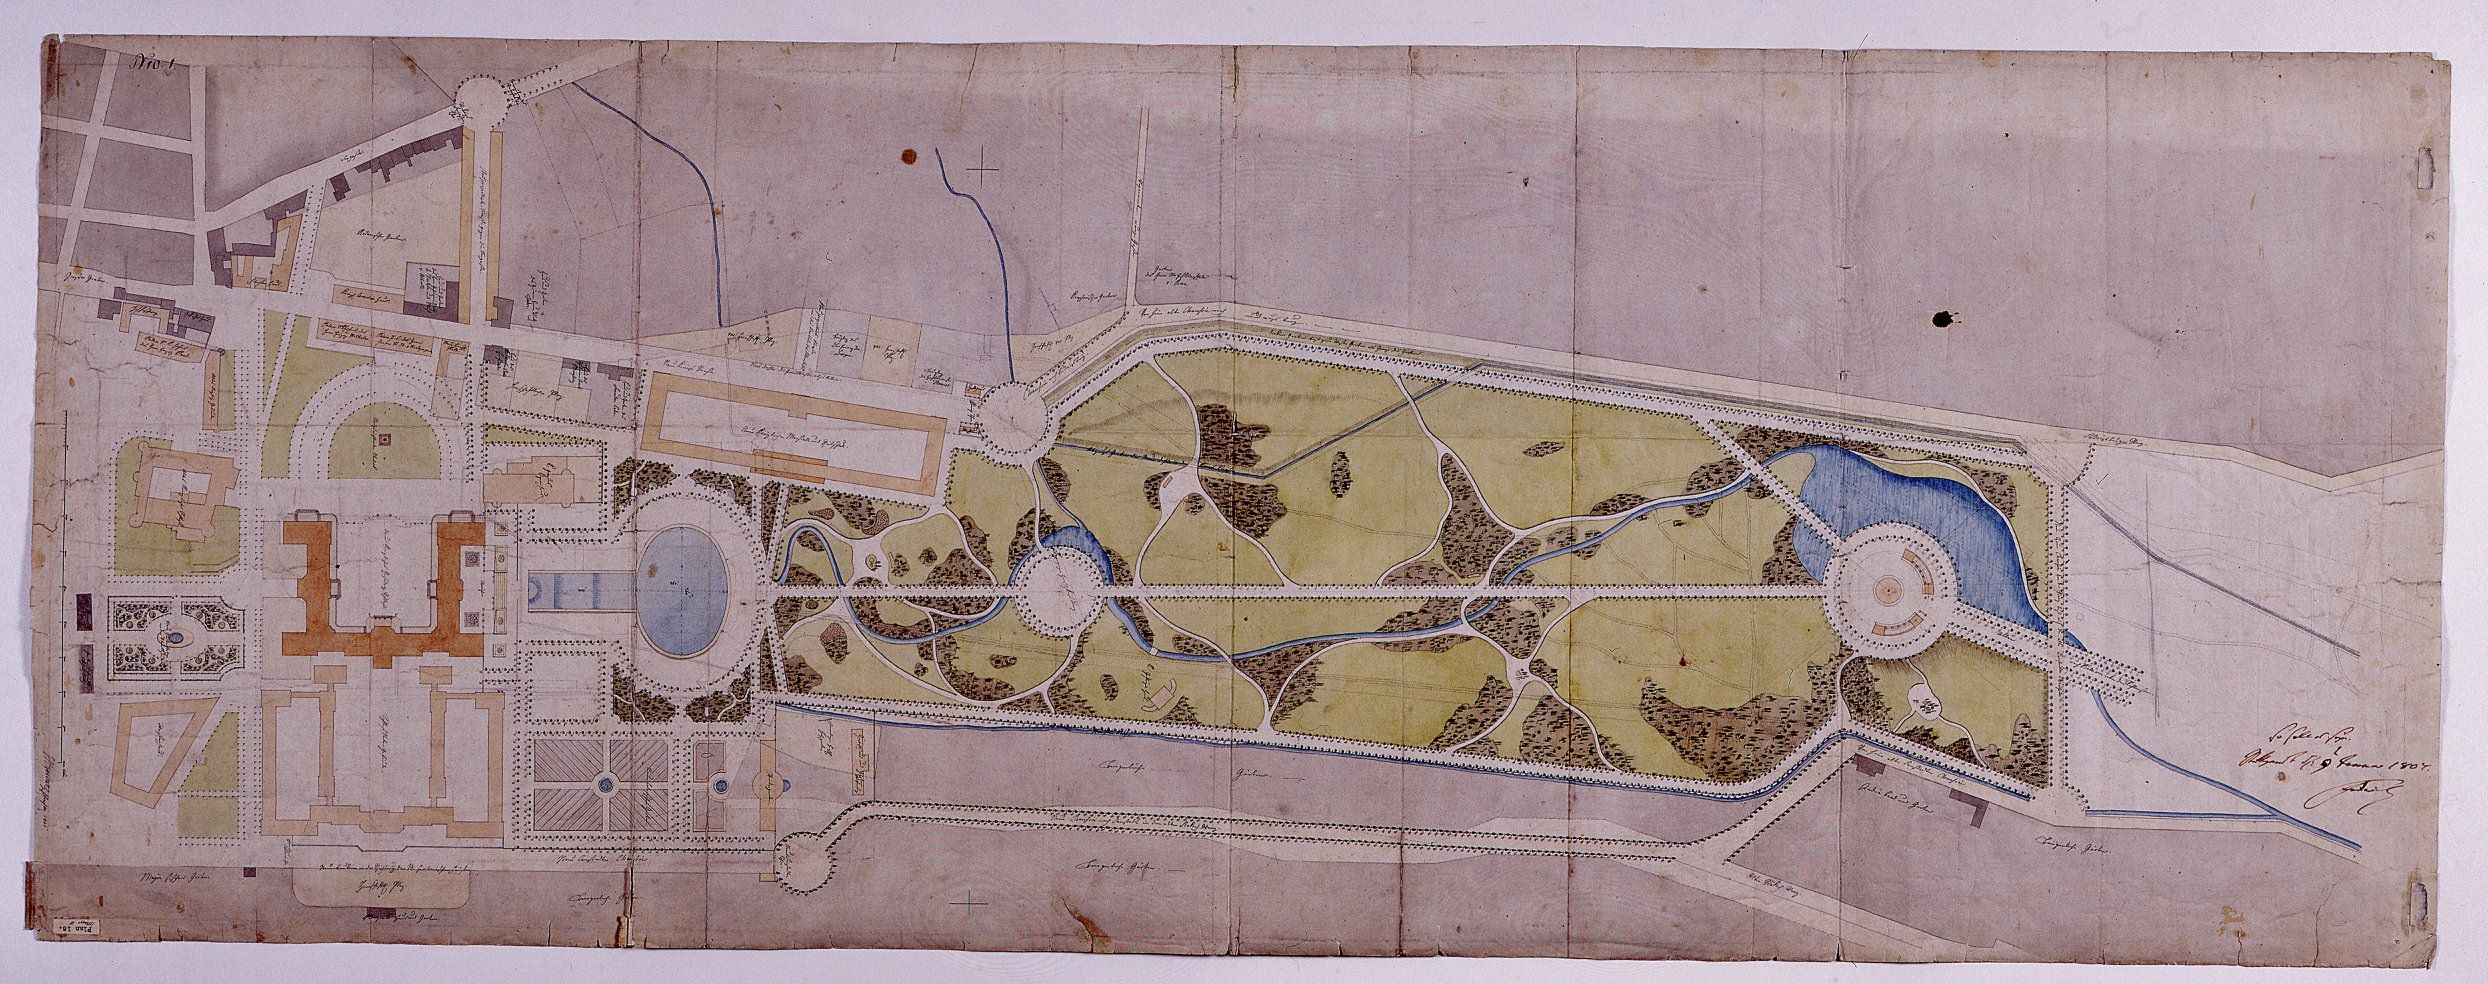 Nikolaus Thouret Schlossgartenplan 1806 – Erweiterung der Stadt in Richtung Neckar